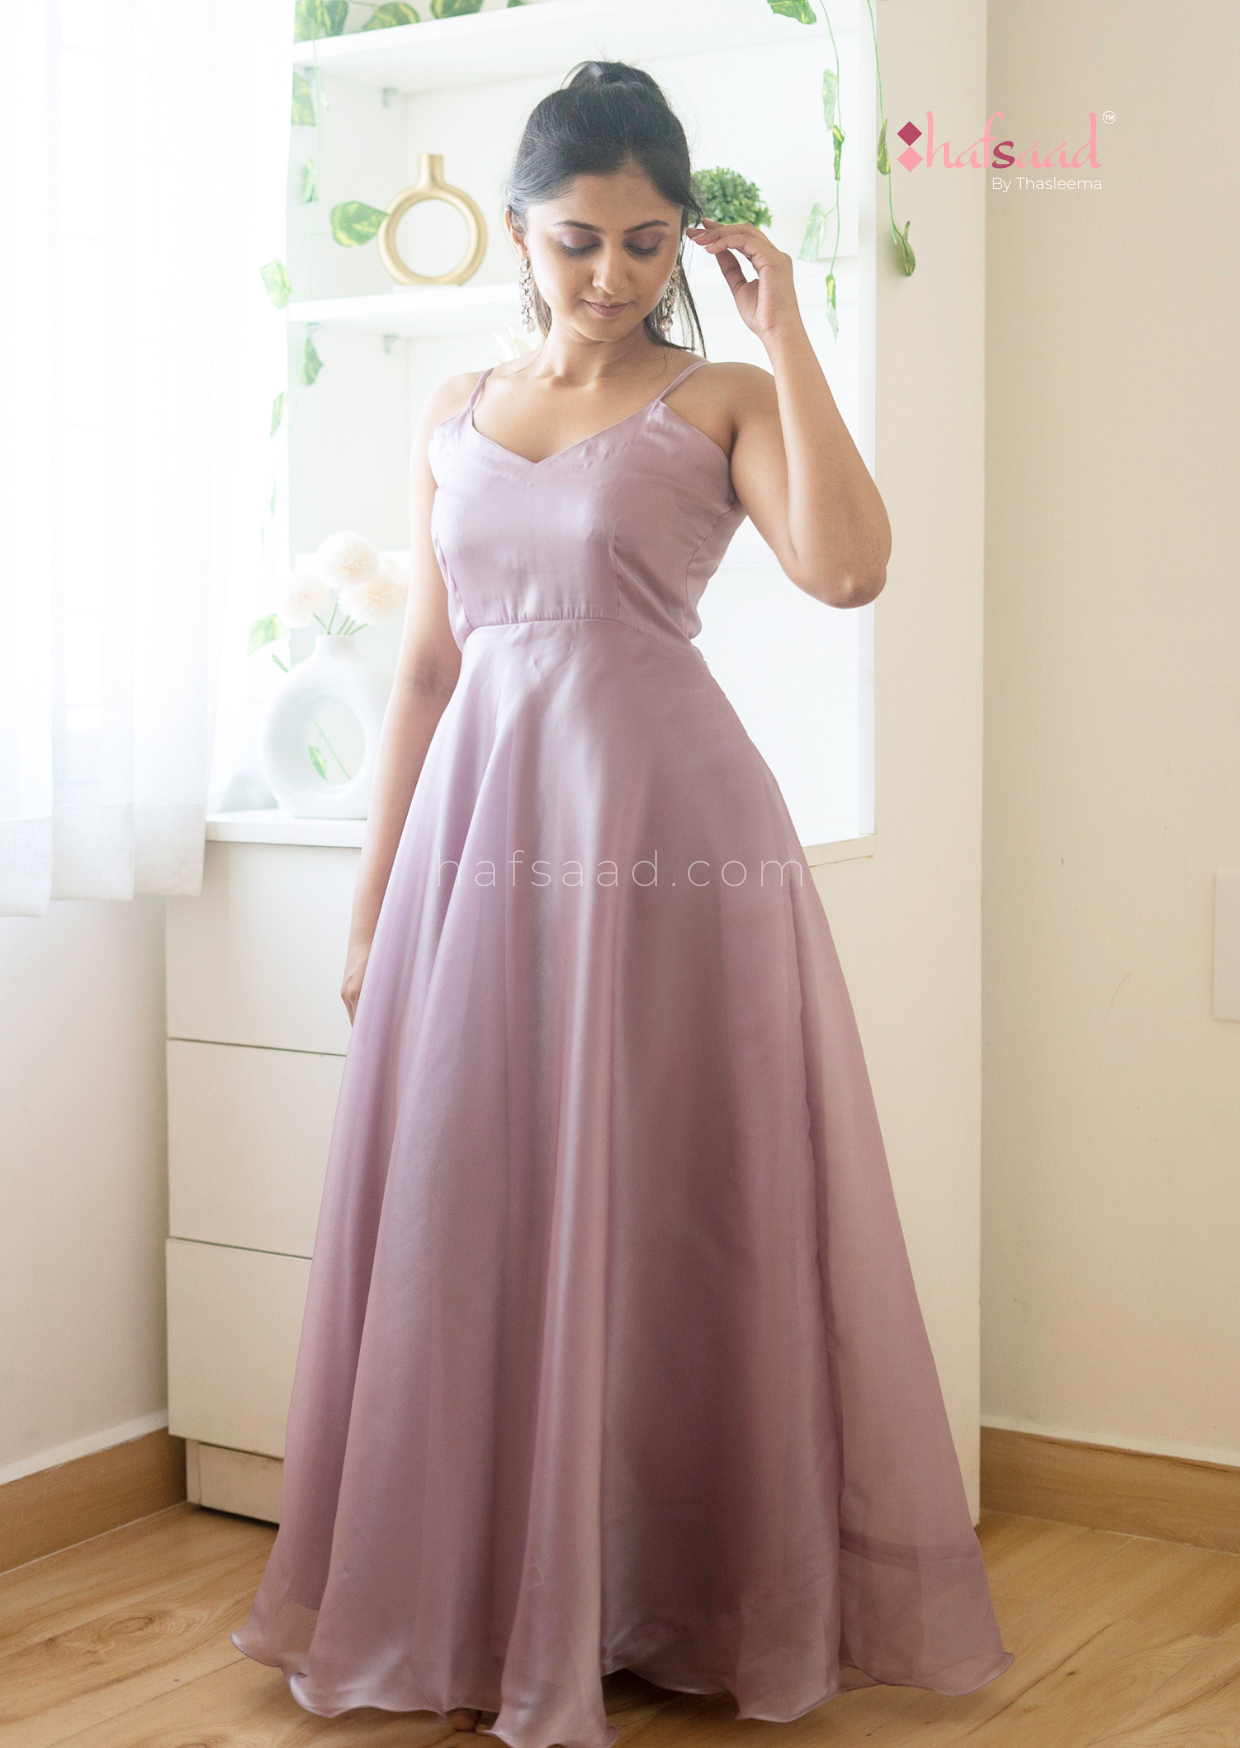 Glisten- Premium Dress gown